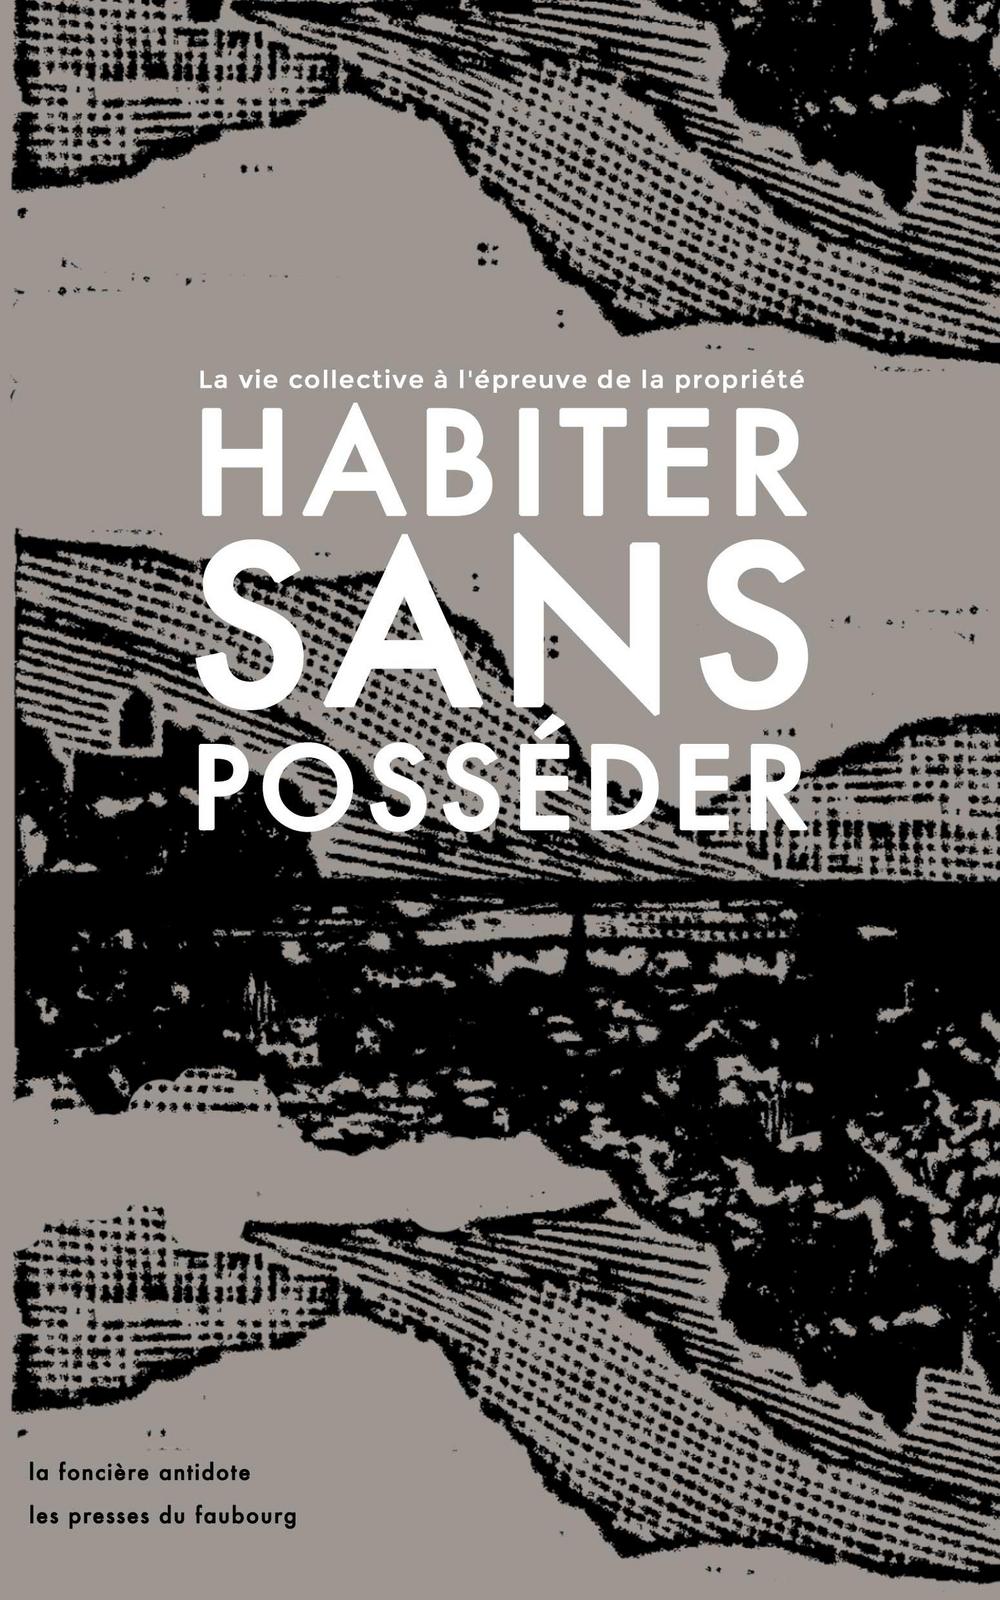 Habiter sans posséder (French language, 2021, Les Presses du Faubourg)